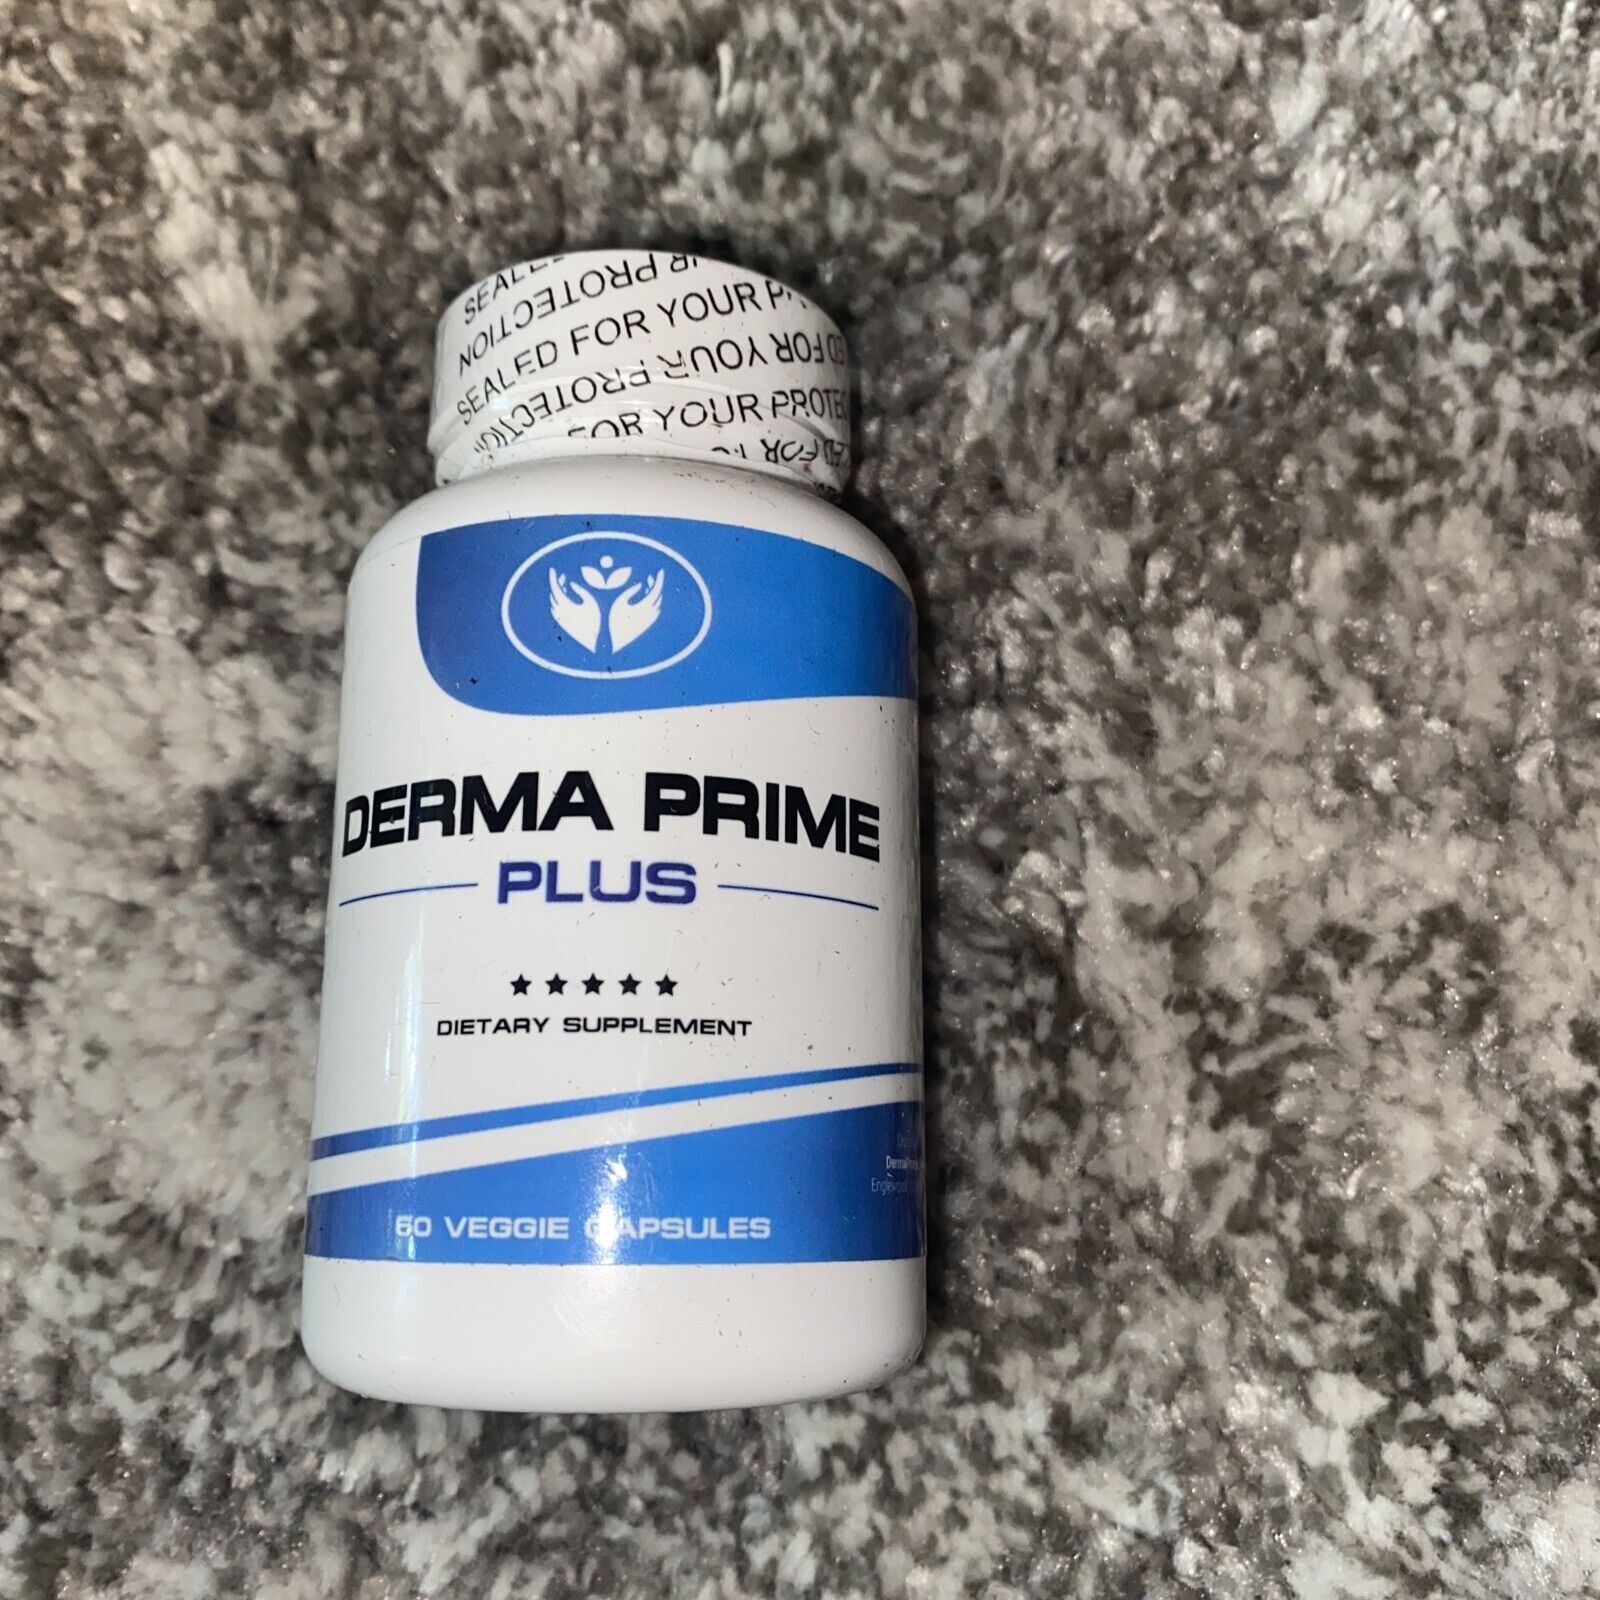 Is Derma Prime Plus Legit